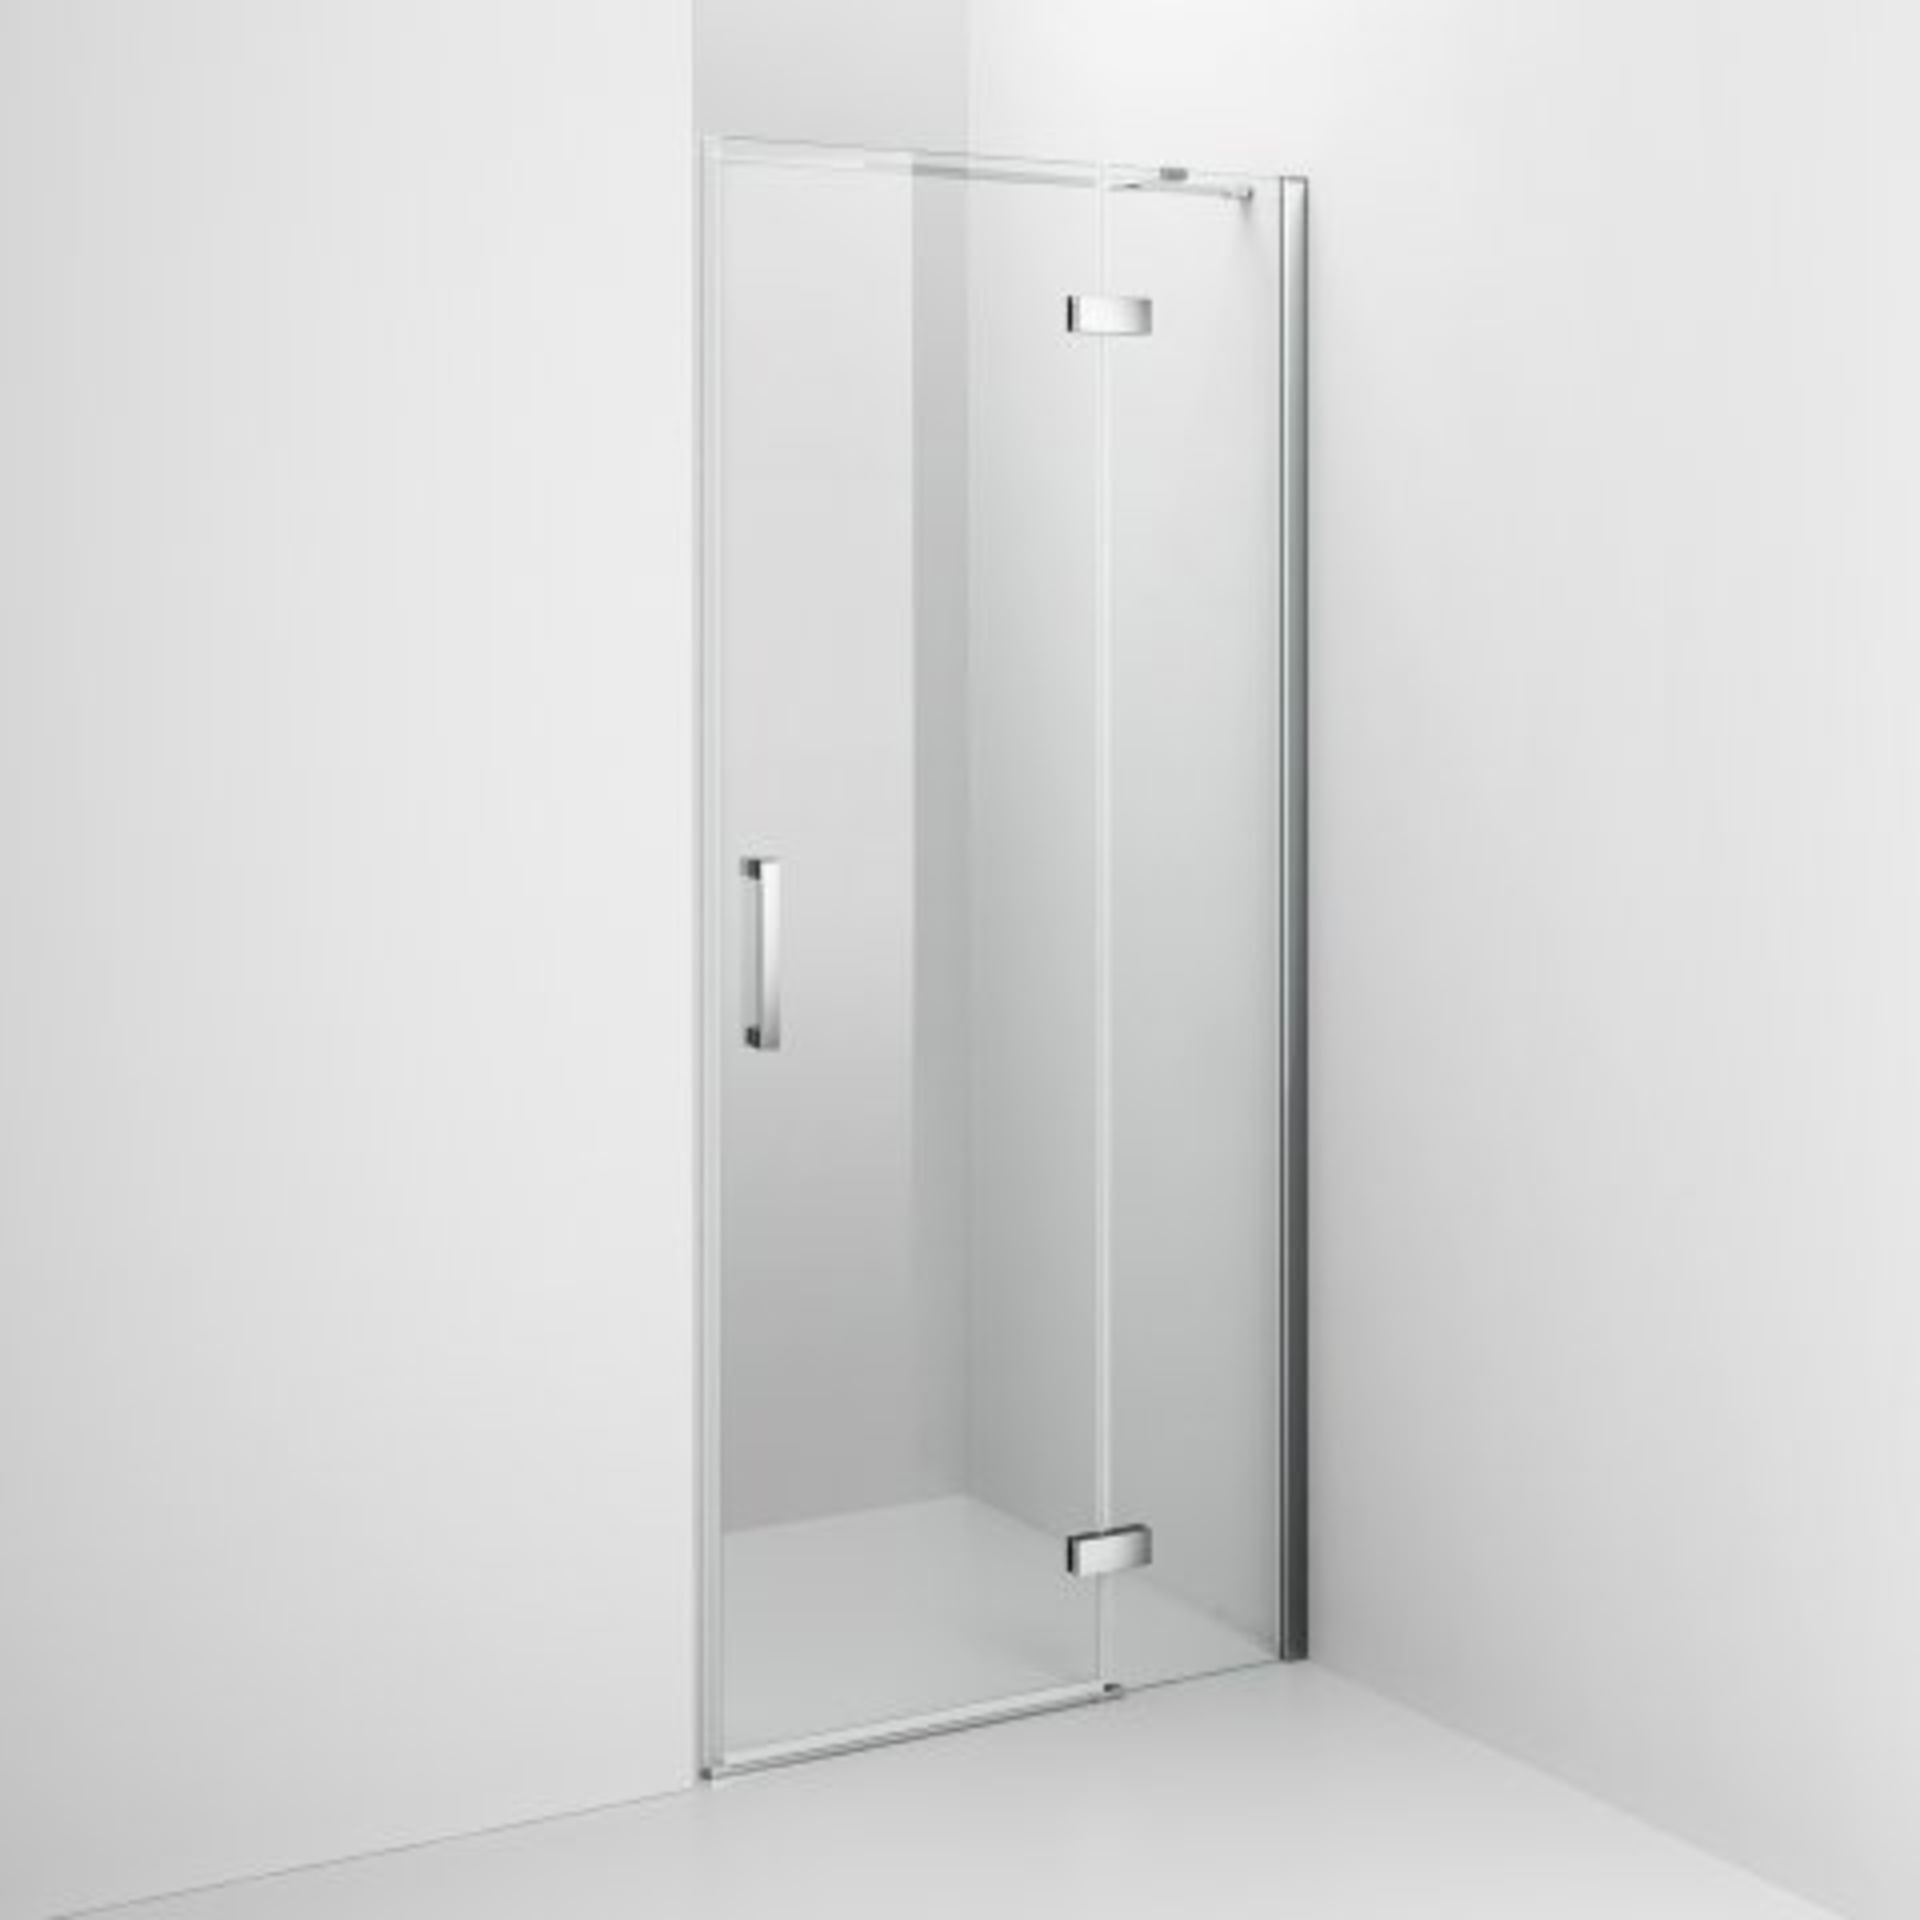 (J26) 800mm - 8mm - Premium EasyClean Hinged Shower Door RRP £499.99 Premium Design Our Premium - Image 5 of 8